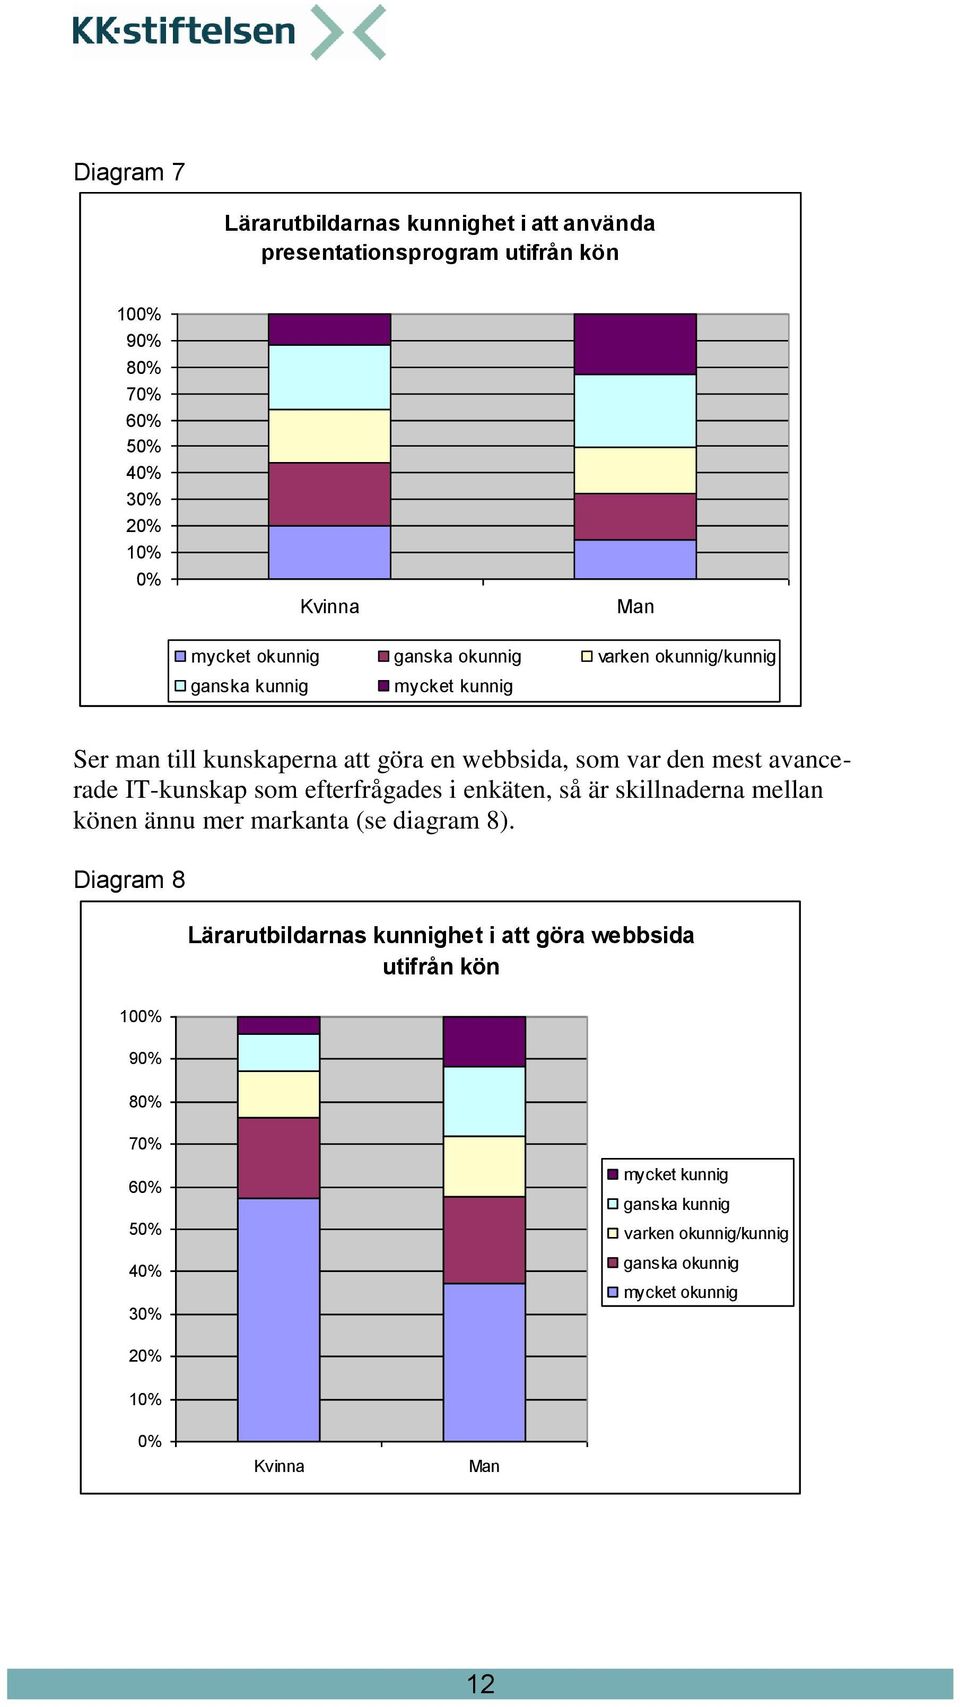 IT-kunskap som efterfrågades i enkäten, så är skillnaderna mellan könen ännu mer markanta (se diagram 8).